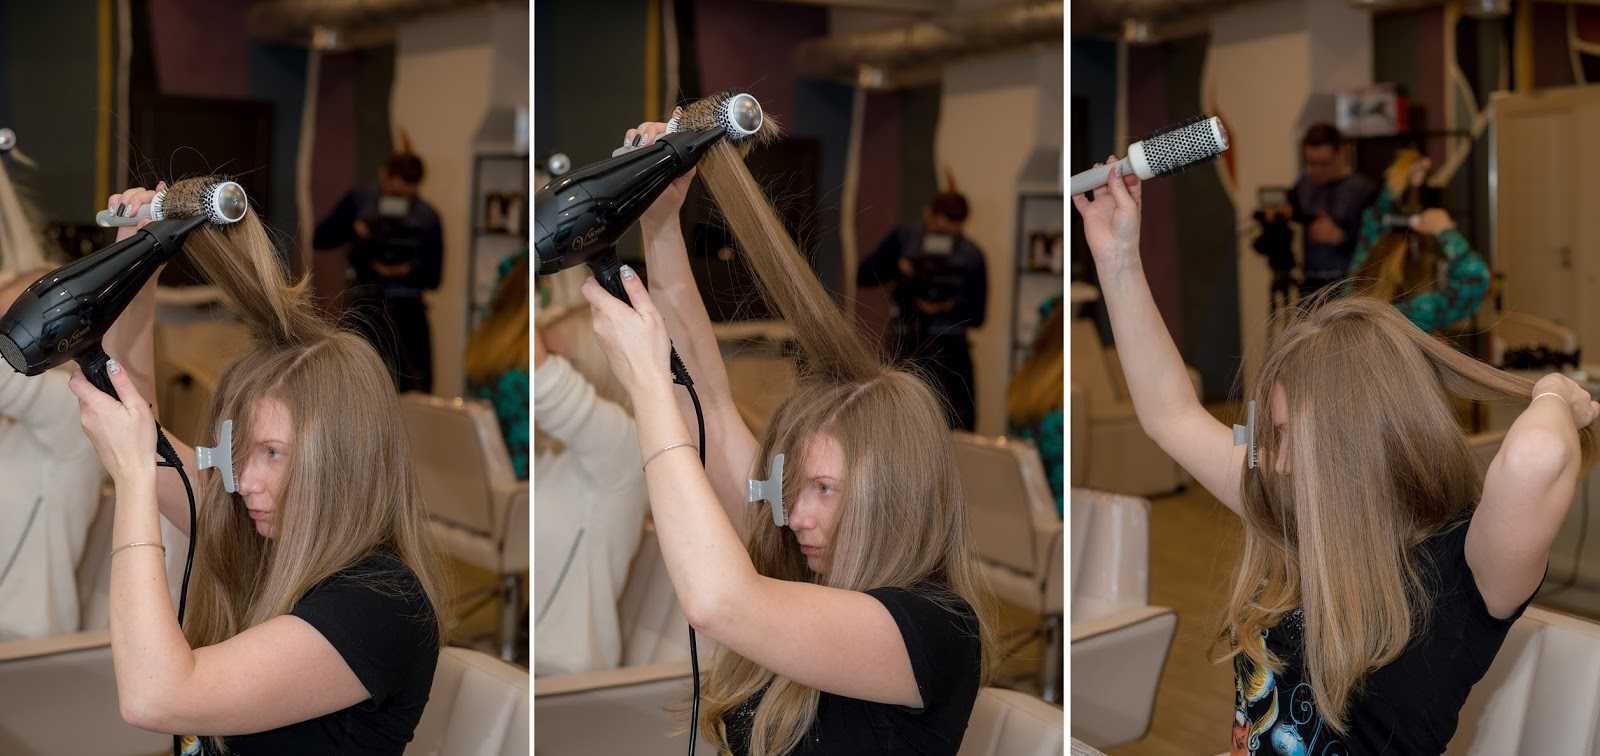 Как укладывать короткие волосы феном: салонная укладка дома за 5 минут